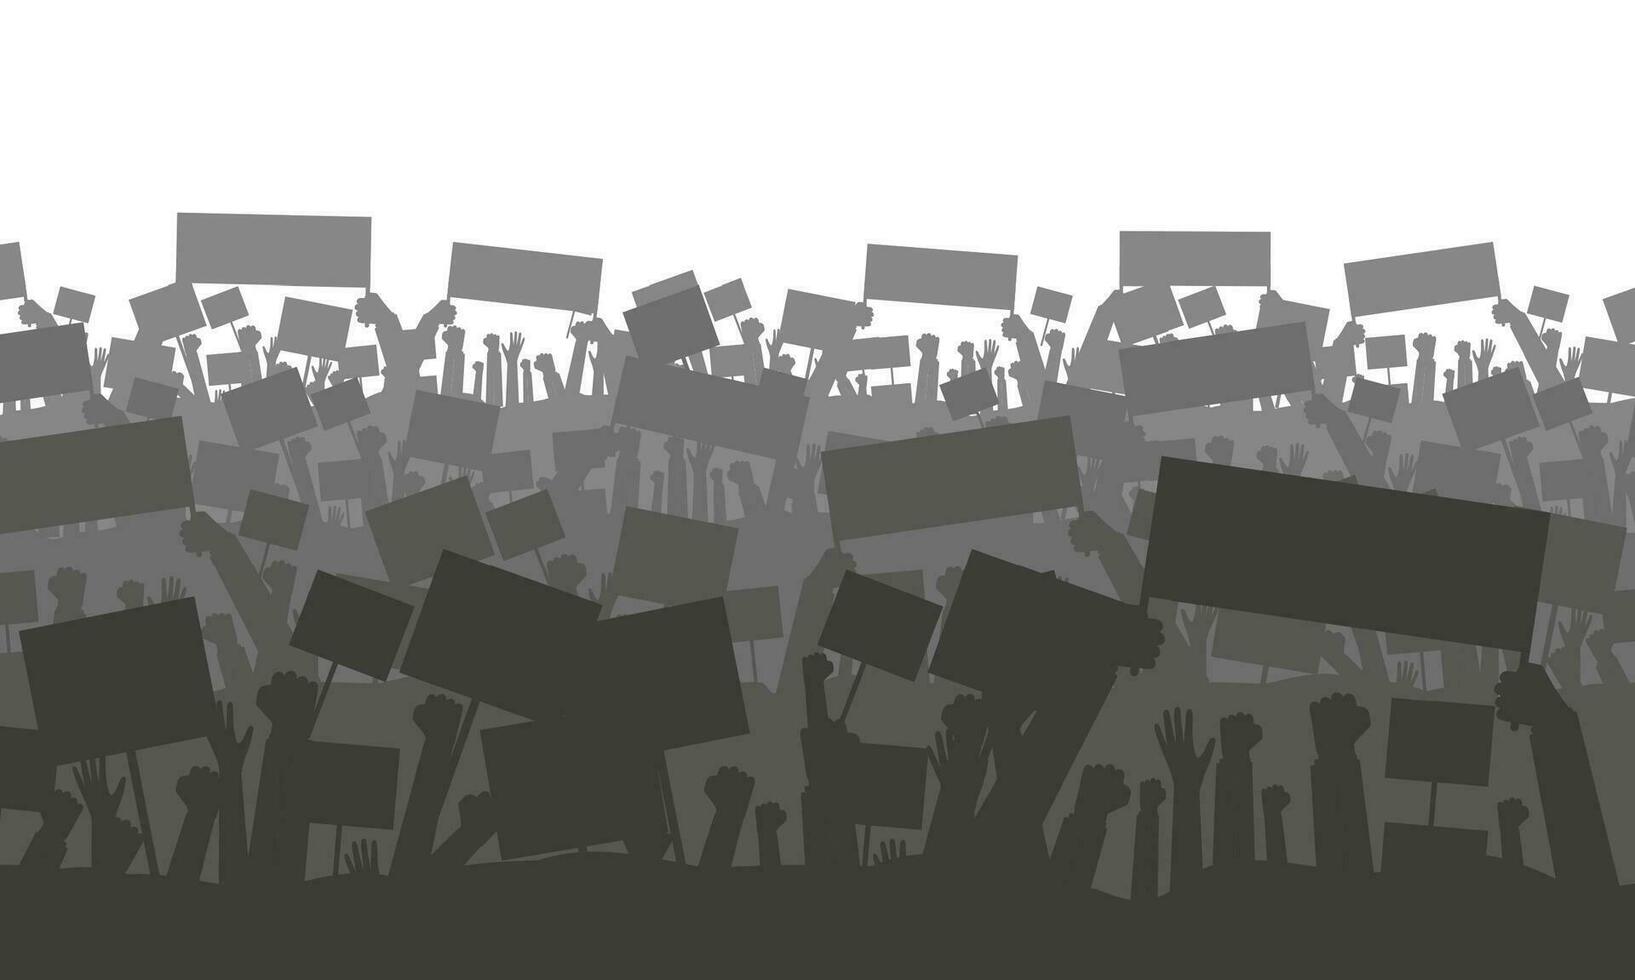 silueta de aplausos o protestando multitud con banderas y pancartas protesta, revolución, conflicto. vector ilustración